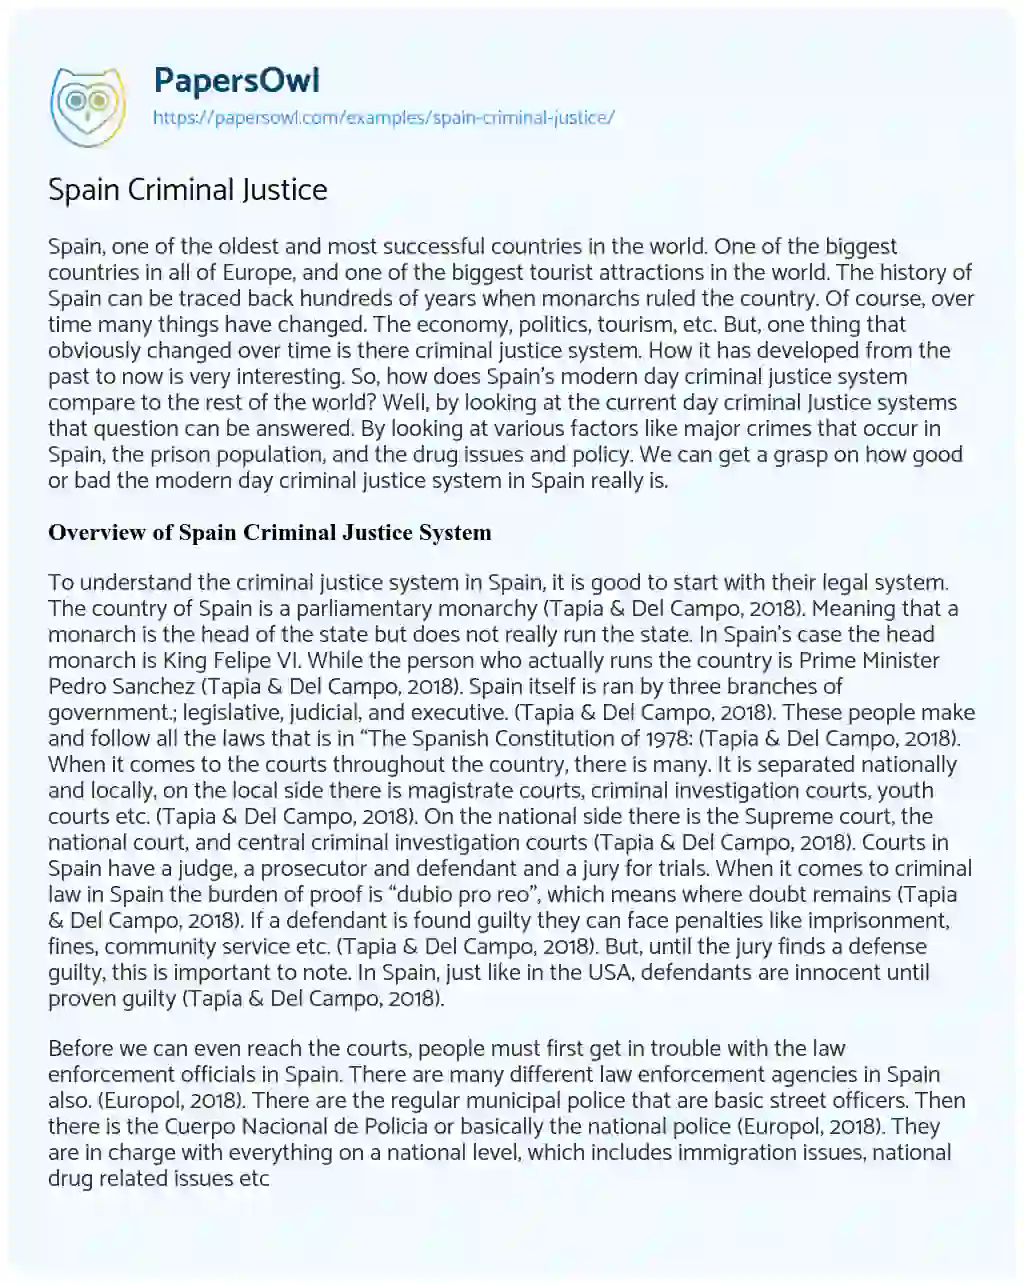 Essay on Spain Criminal Justice